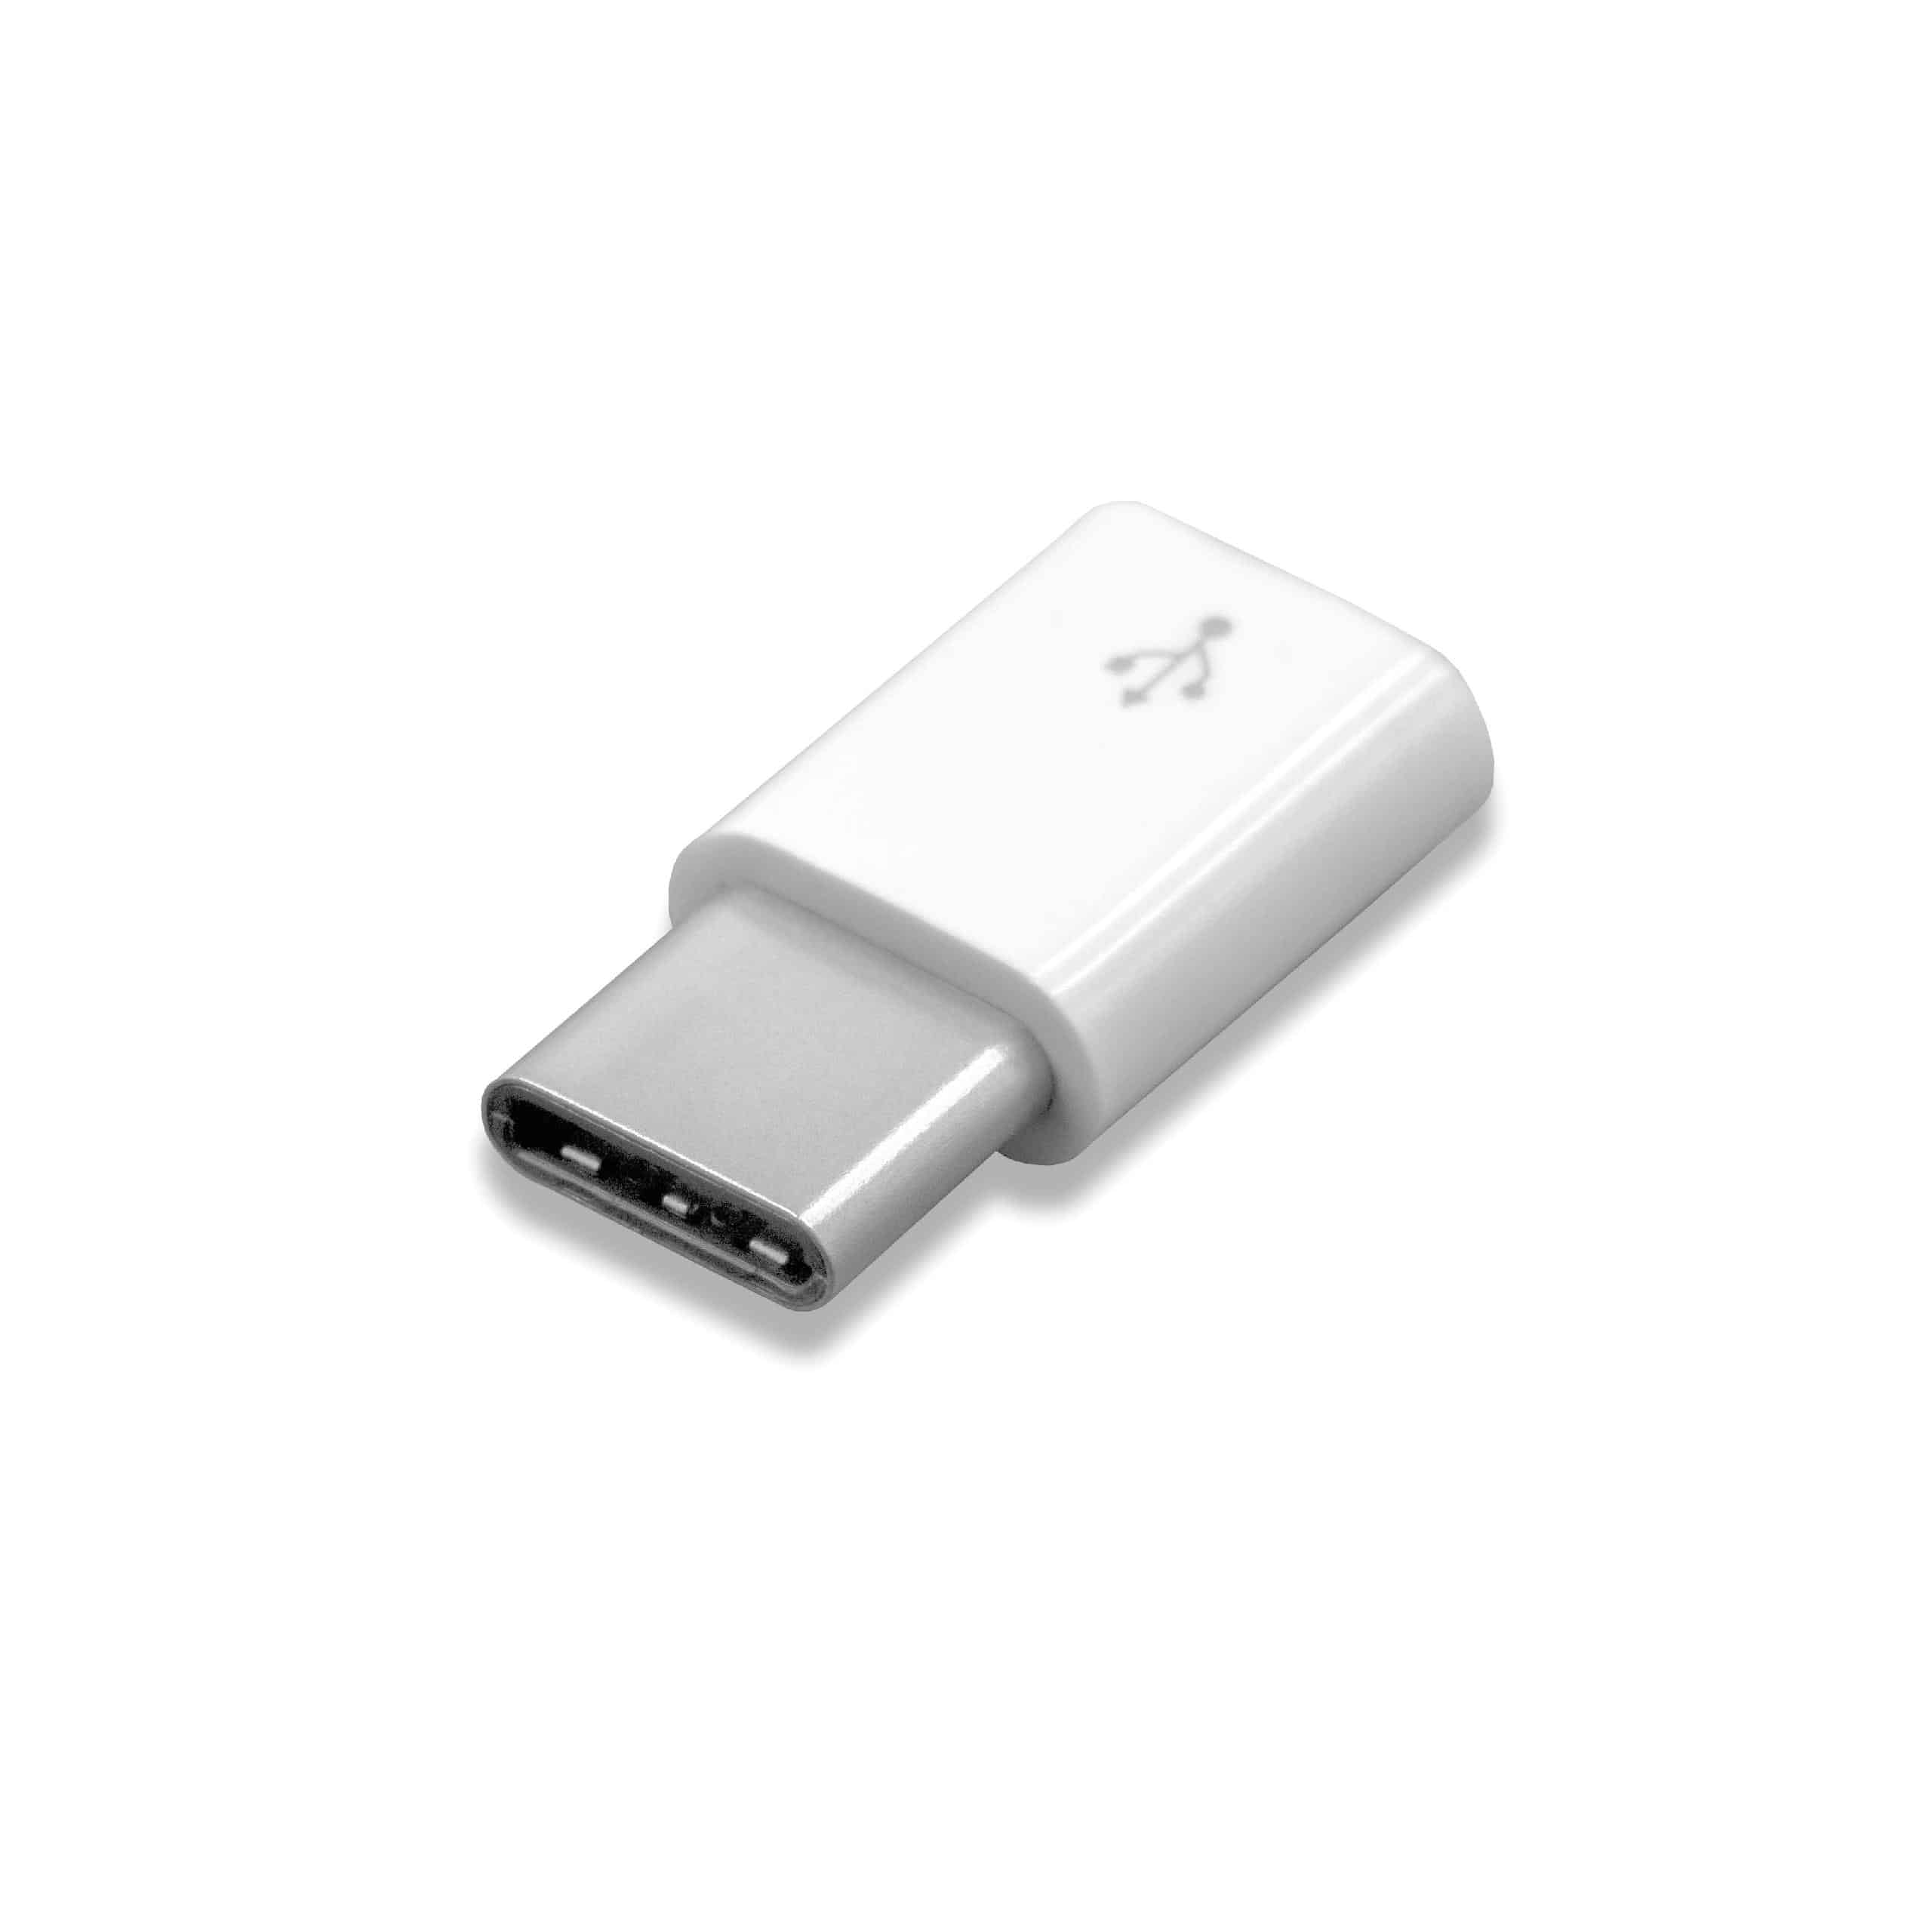 Adapter OTG USB Type C (männlich) auf Micro USB (weiblich) für Smartphone, Tablet, Laptop, Notebook, PC